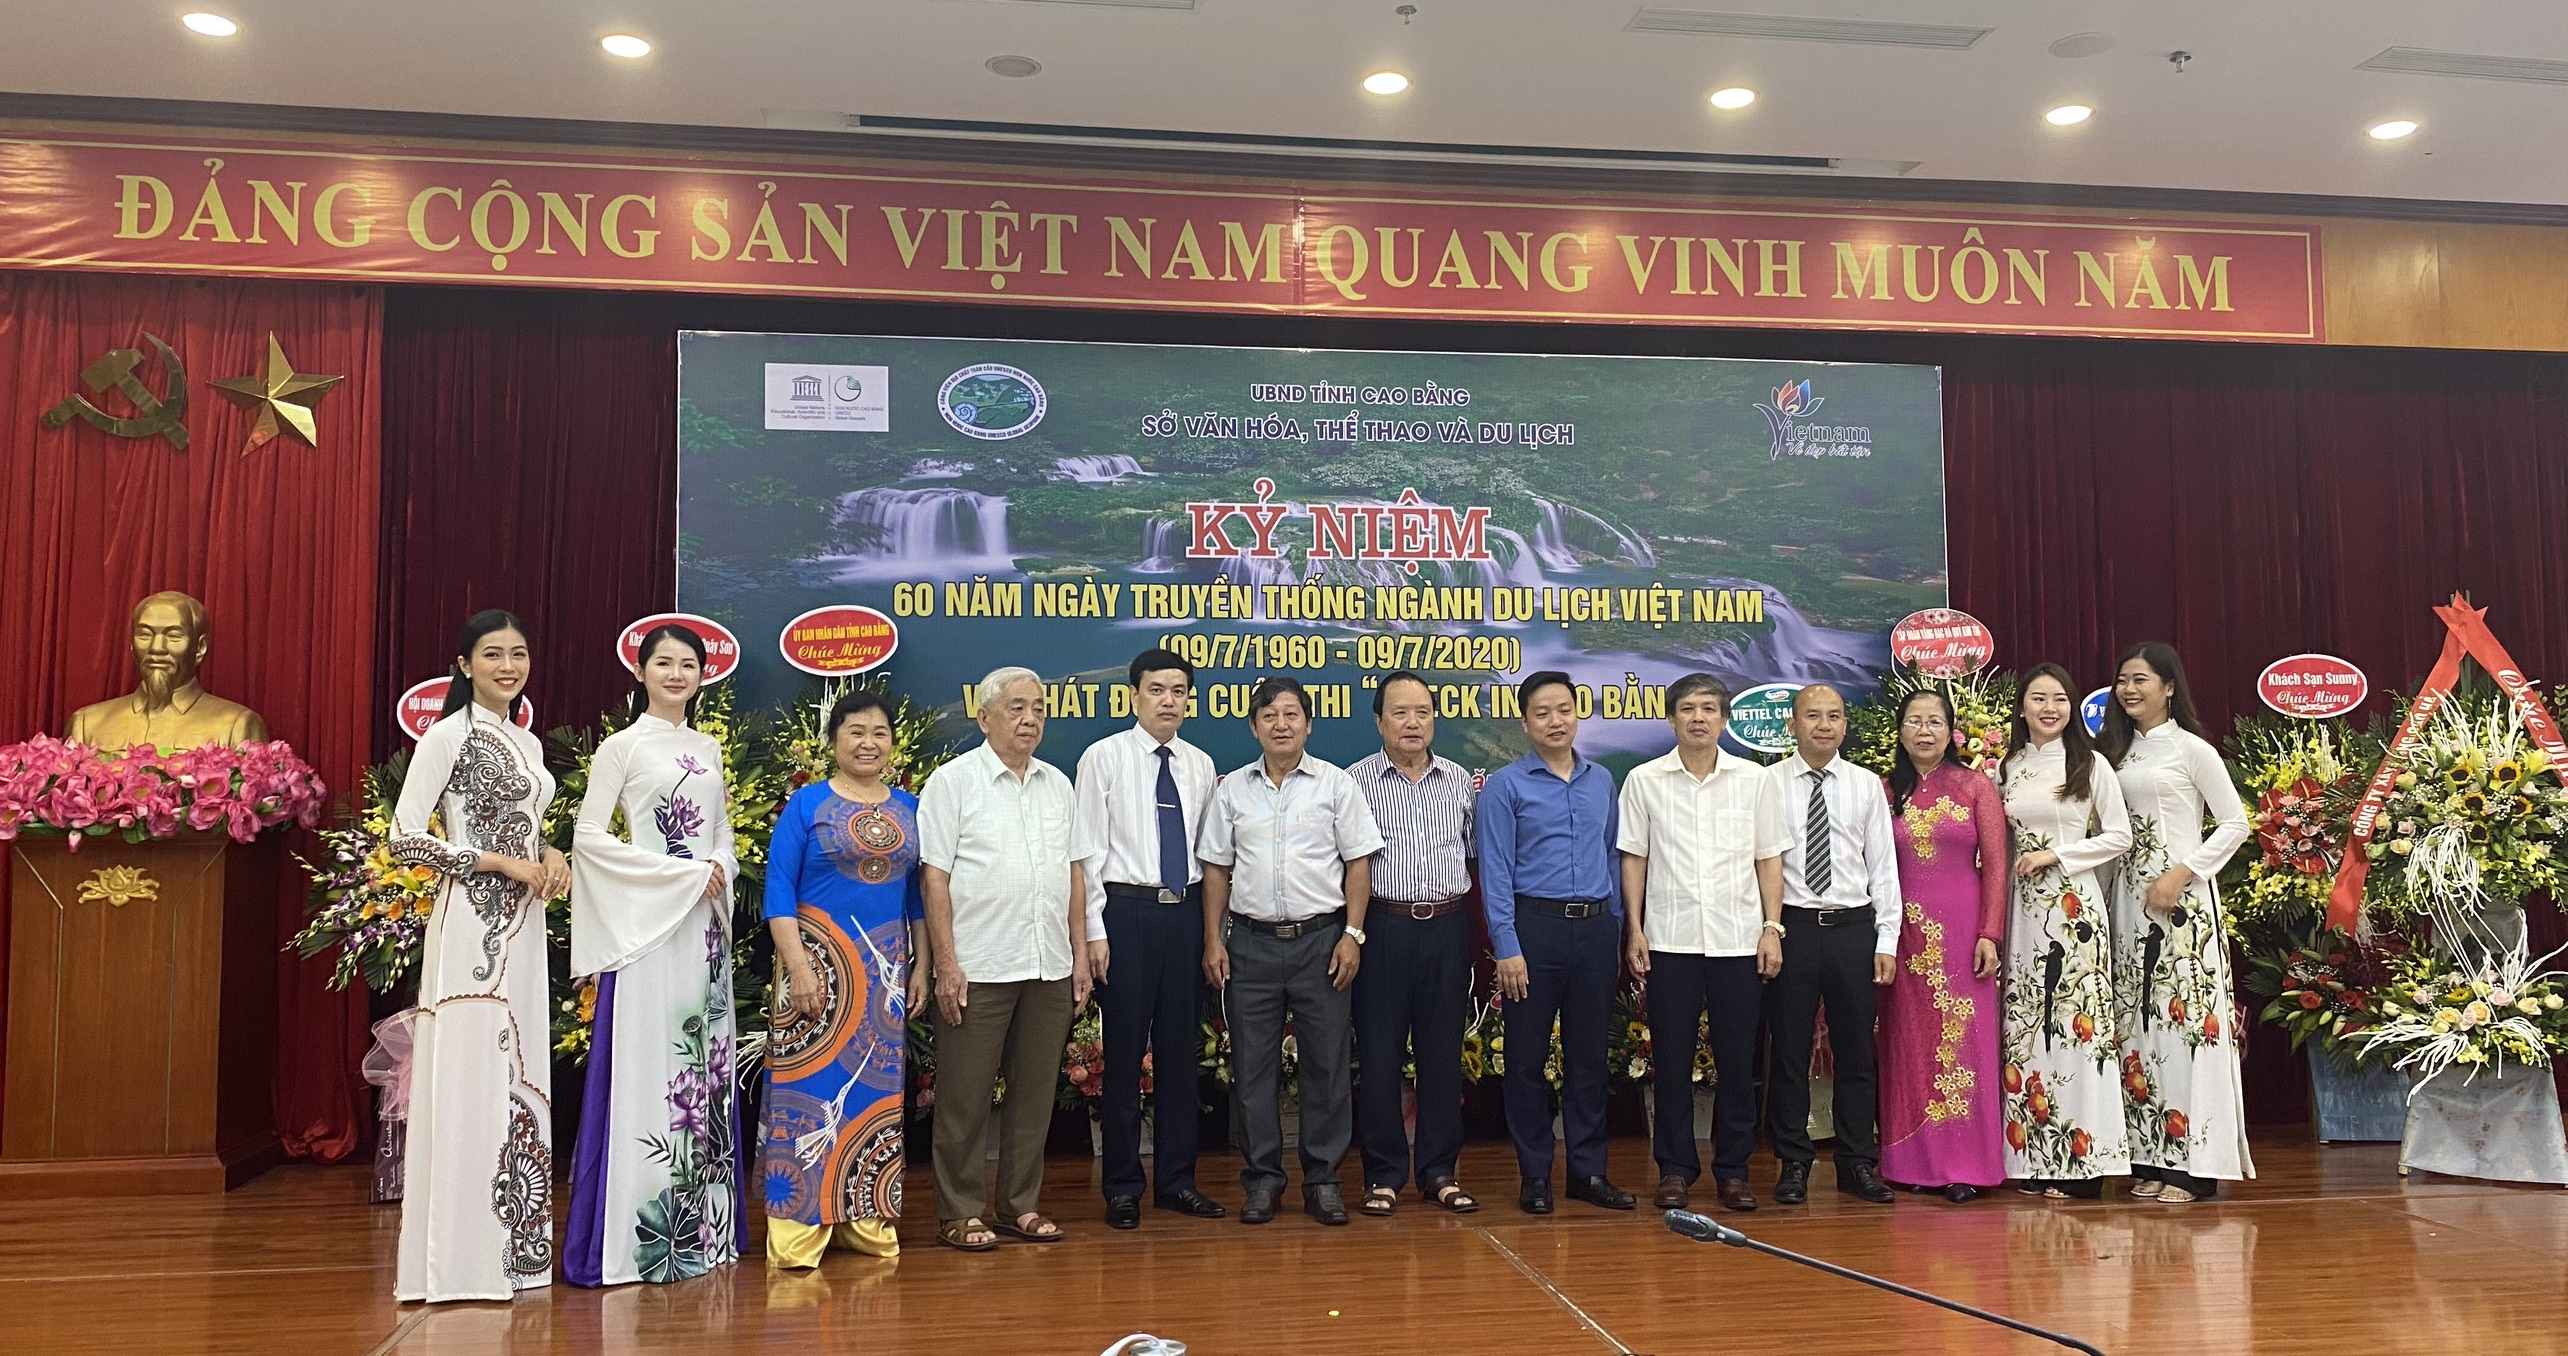 Sở Văn hóa, Thể thao và Du lịch kỷ niệm 60 năm Ngày truyền thống ngành Du lịch Việt Nam và phát động cuộc thi “Check in Cao Bằng”